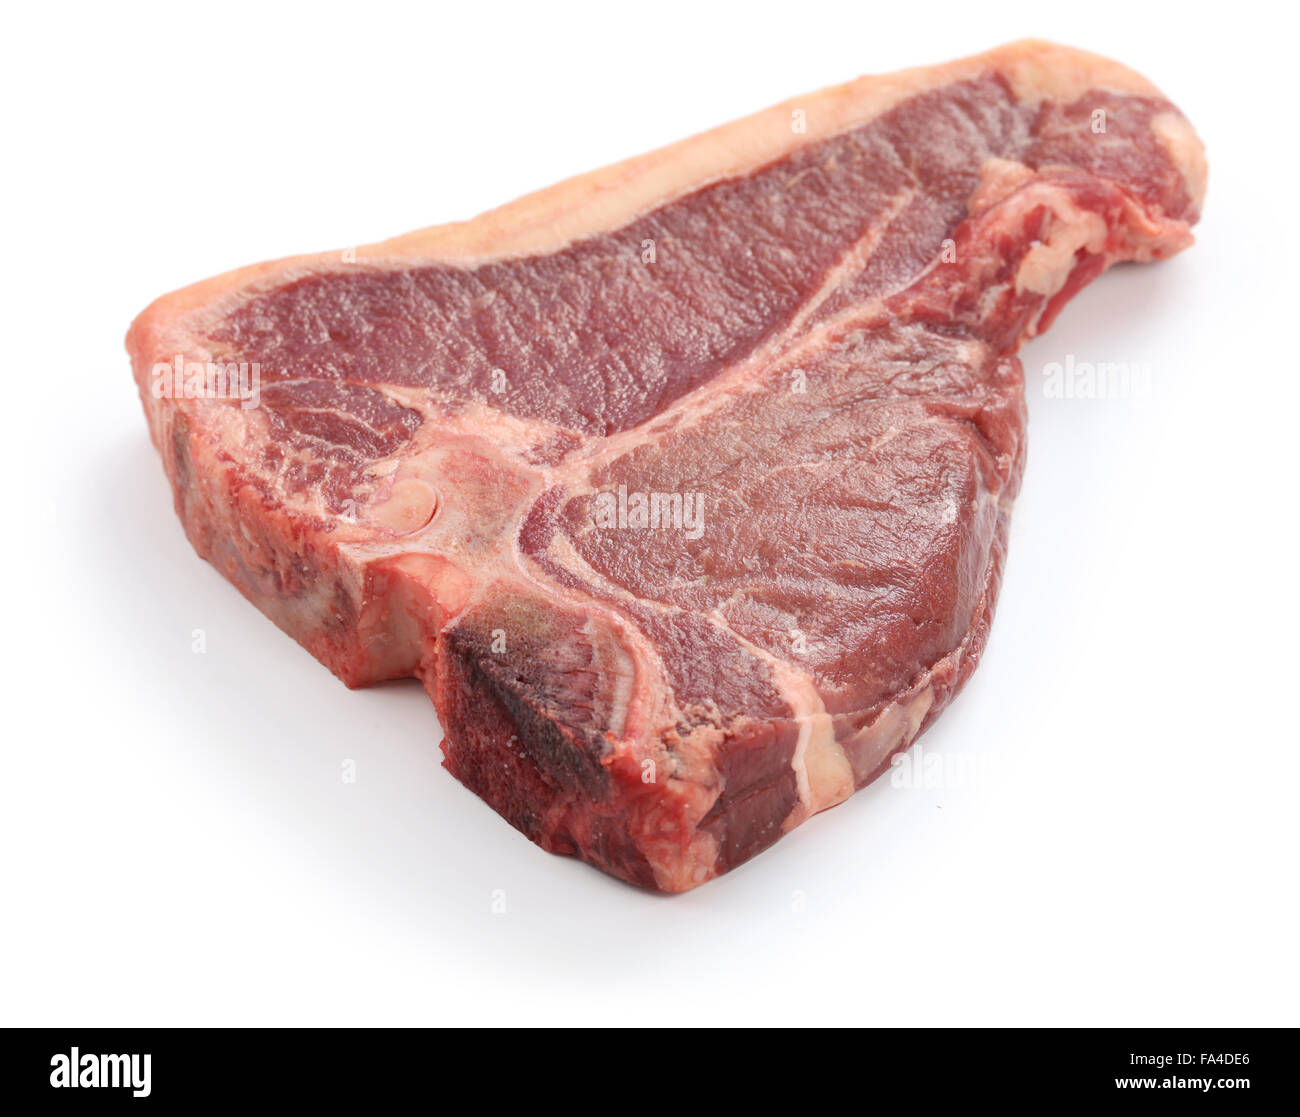 Sécher de t-bone steak de boeuf cru, isolé sur fond blanc Banque D'Images